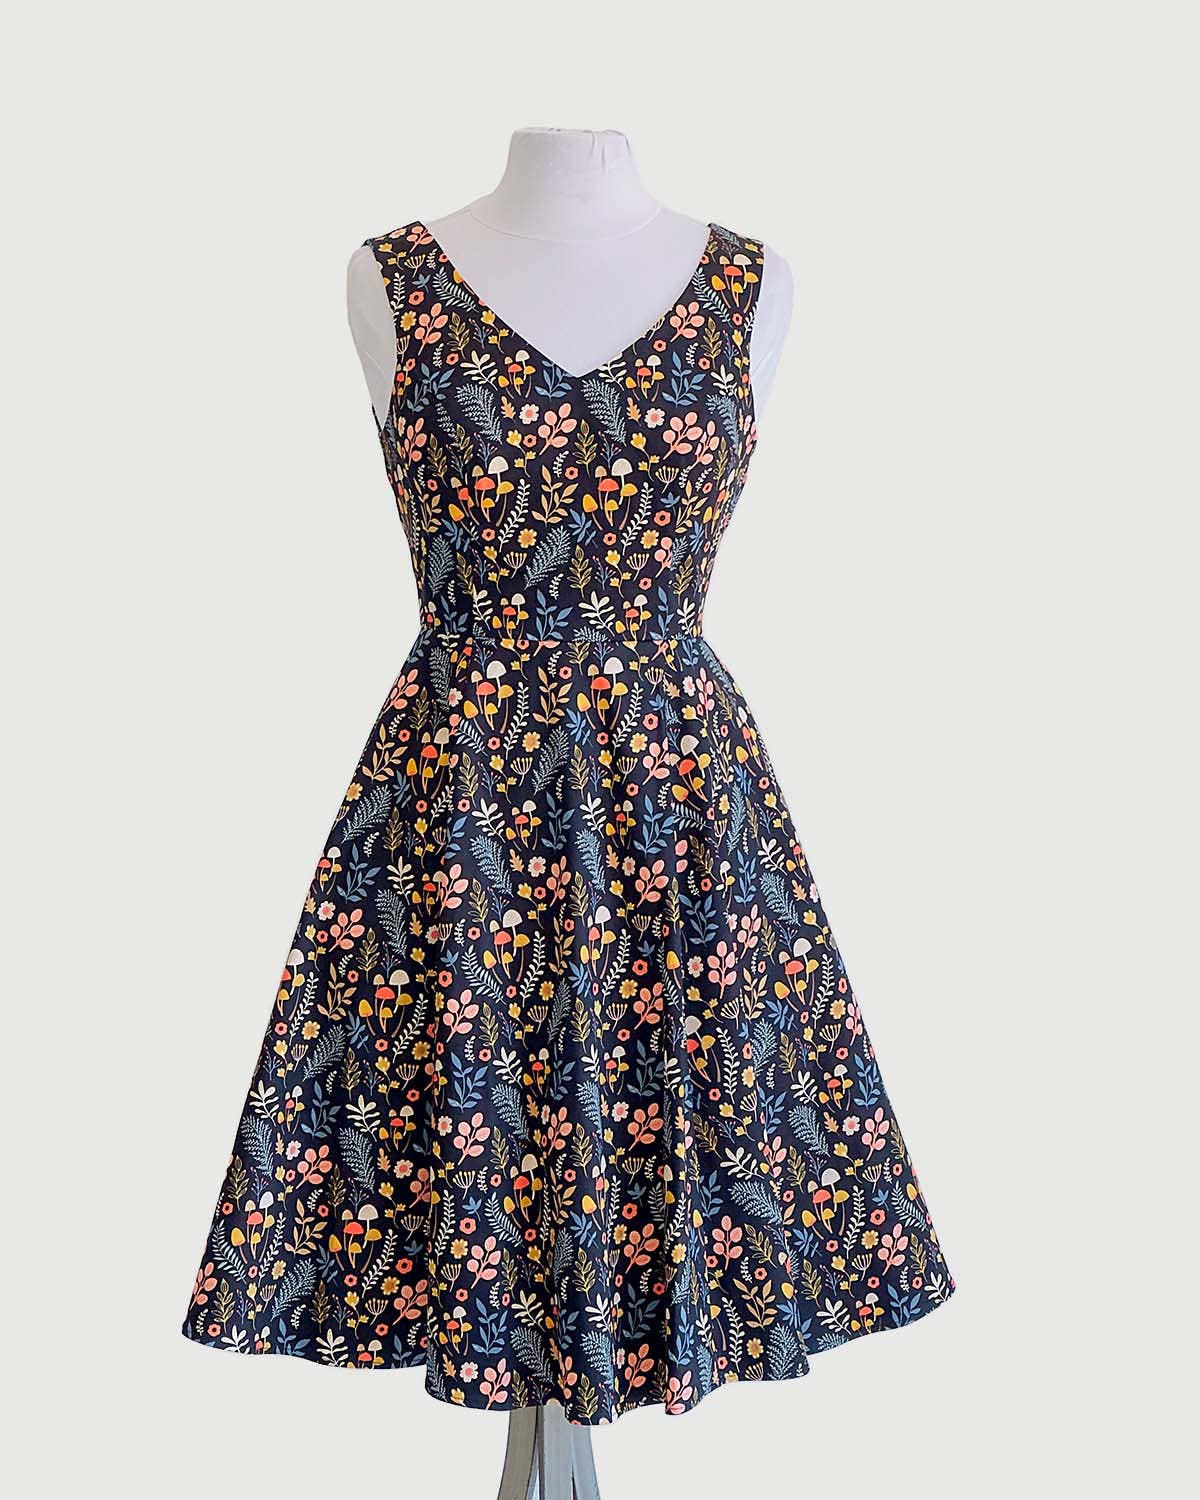 Wholesale V-Neck Sleeveless Dress In Ditsy Mushroom Print for